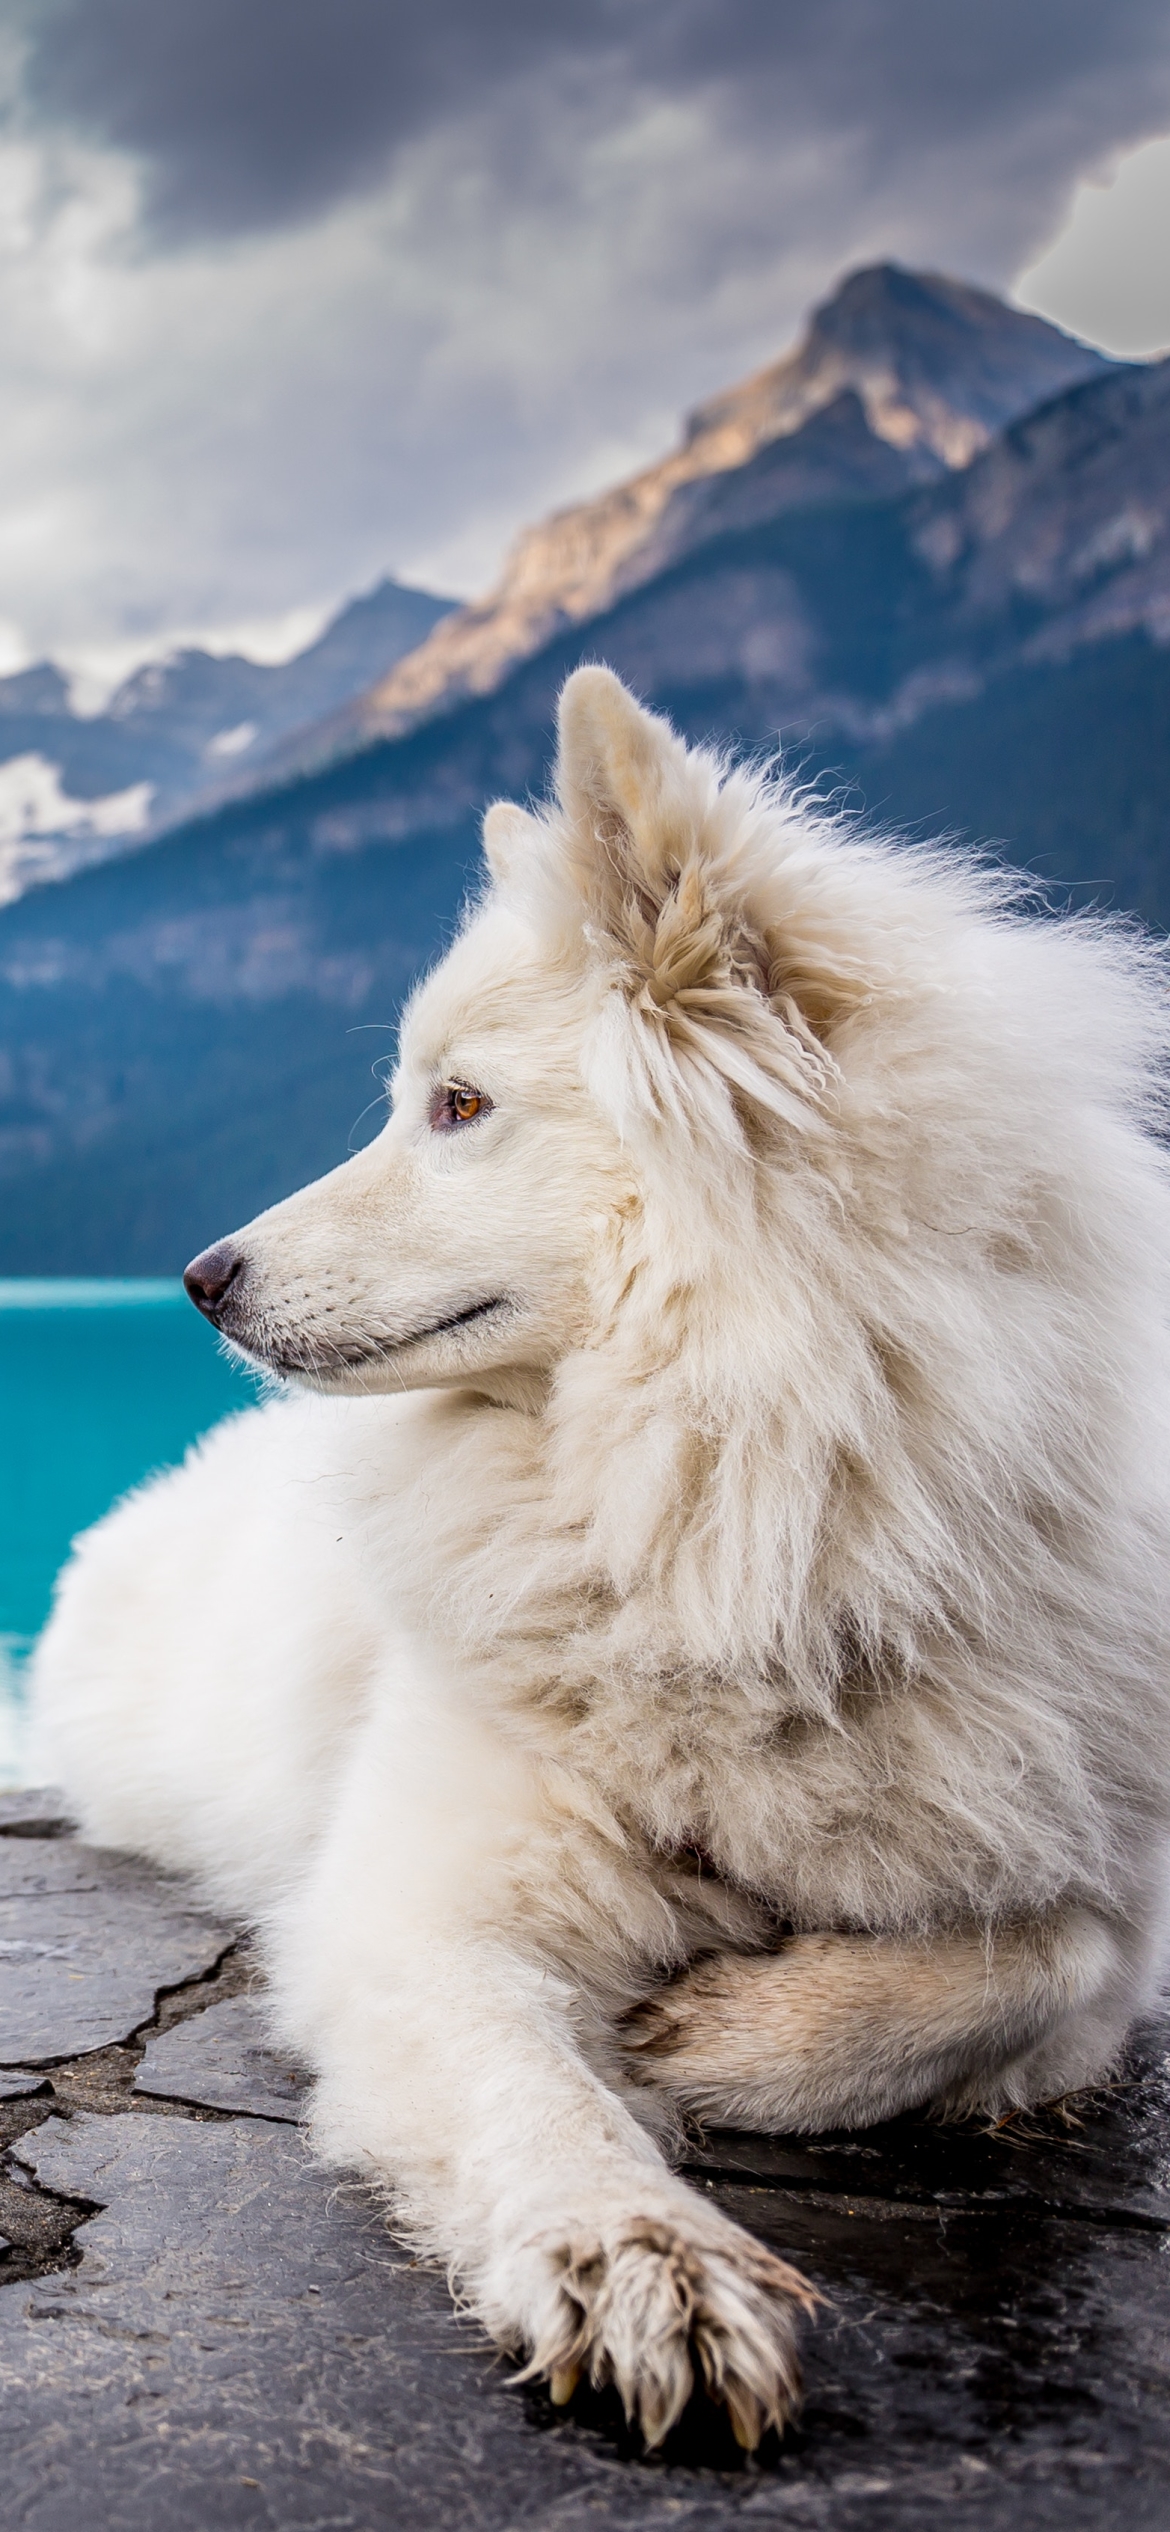 Descarga gratuita de fondo de pantalla para móvil de Animales, Perros, Canadá, Perro.